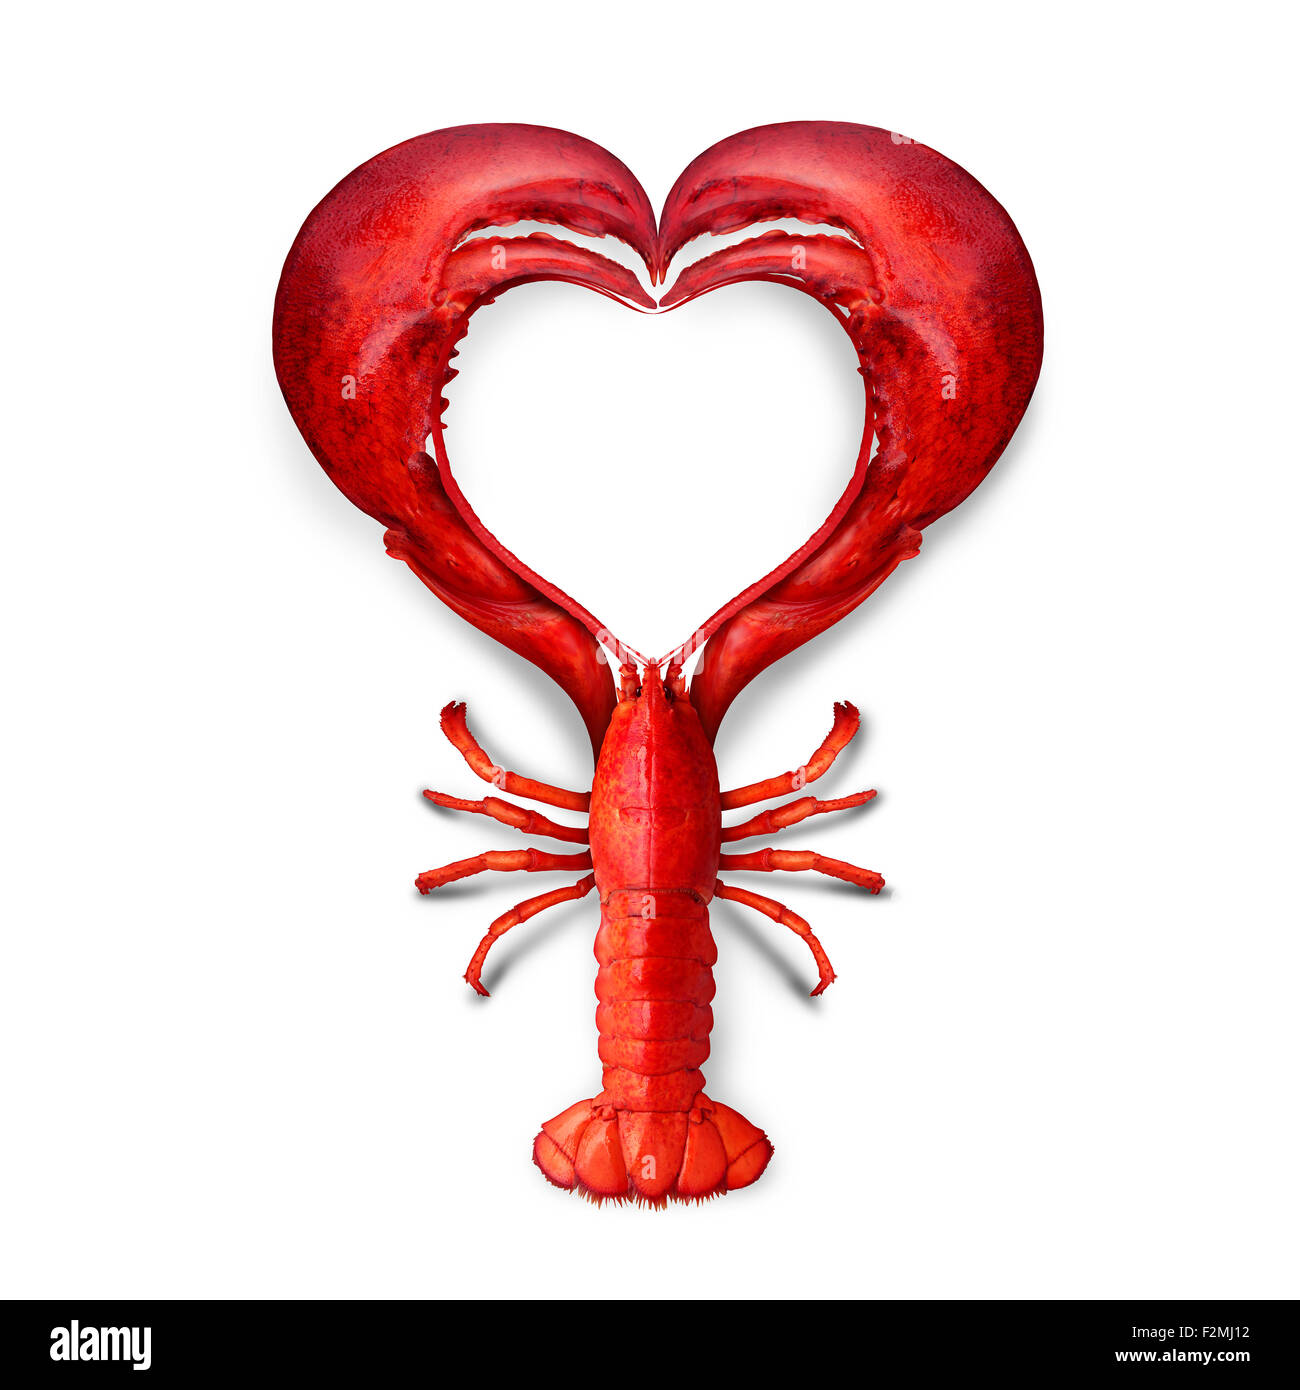 Frutti di mare il concetto di amore come una aragosta bollita conformata come un simbolo del cuore come una metafora di frutti di mare freschi dall'oceano o la promozione di una cena a base di pesce o la commercializzazione di un menù del ristorante. Foto Stock